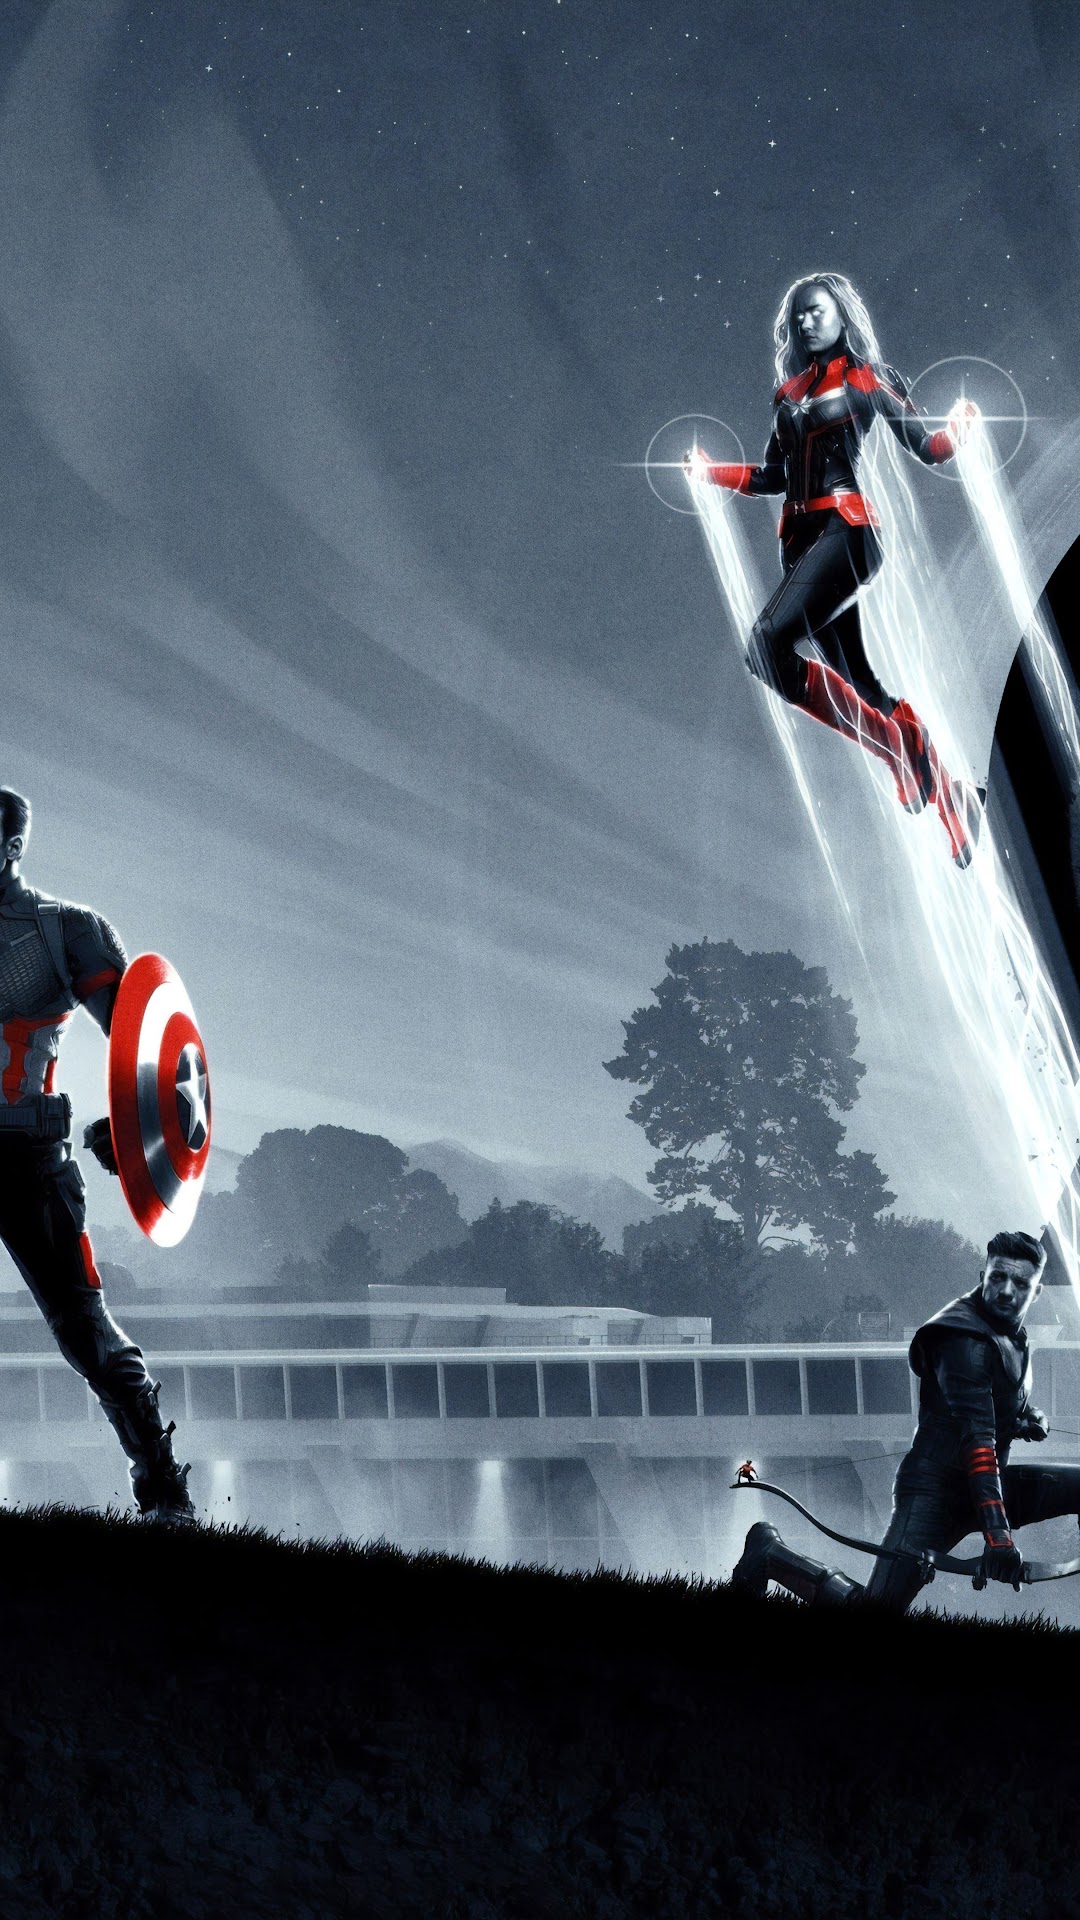 Captain Marvel Avengers Endgame Wallpapers